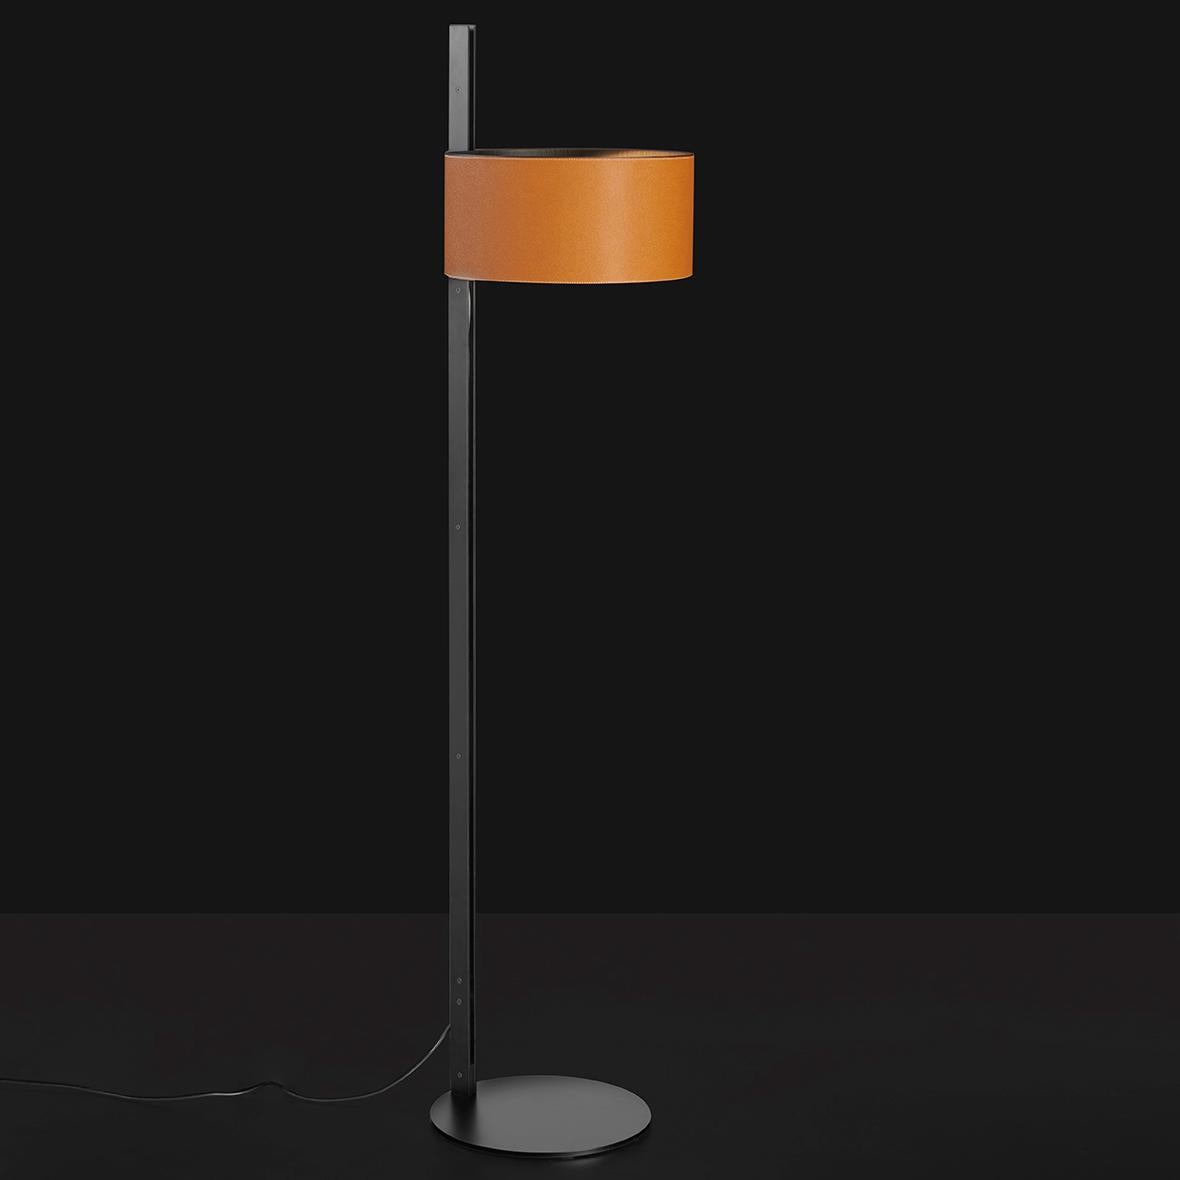 Die von Victor Vasilev entworfene Stehleuchte Parallele besteht aus einem zylindrischen Lampenschirm aus Metall, der von einem seitlich angeordneten vertikalen Stiel getragen wird. Der Stiel besteht aus zwei mattschwarzen Metallplatten, die im